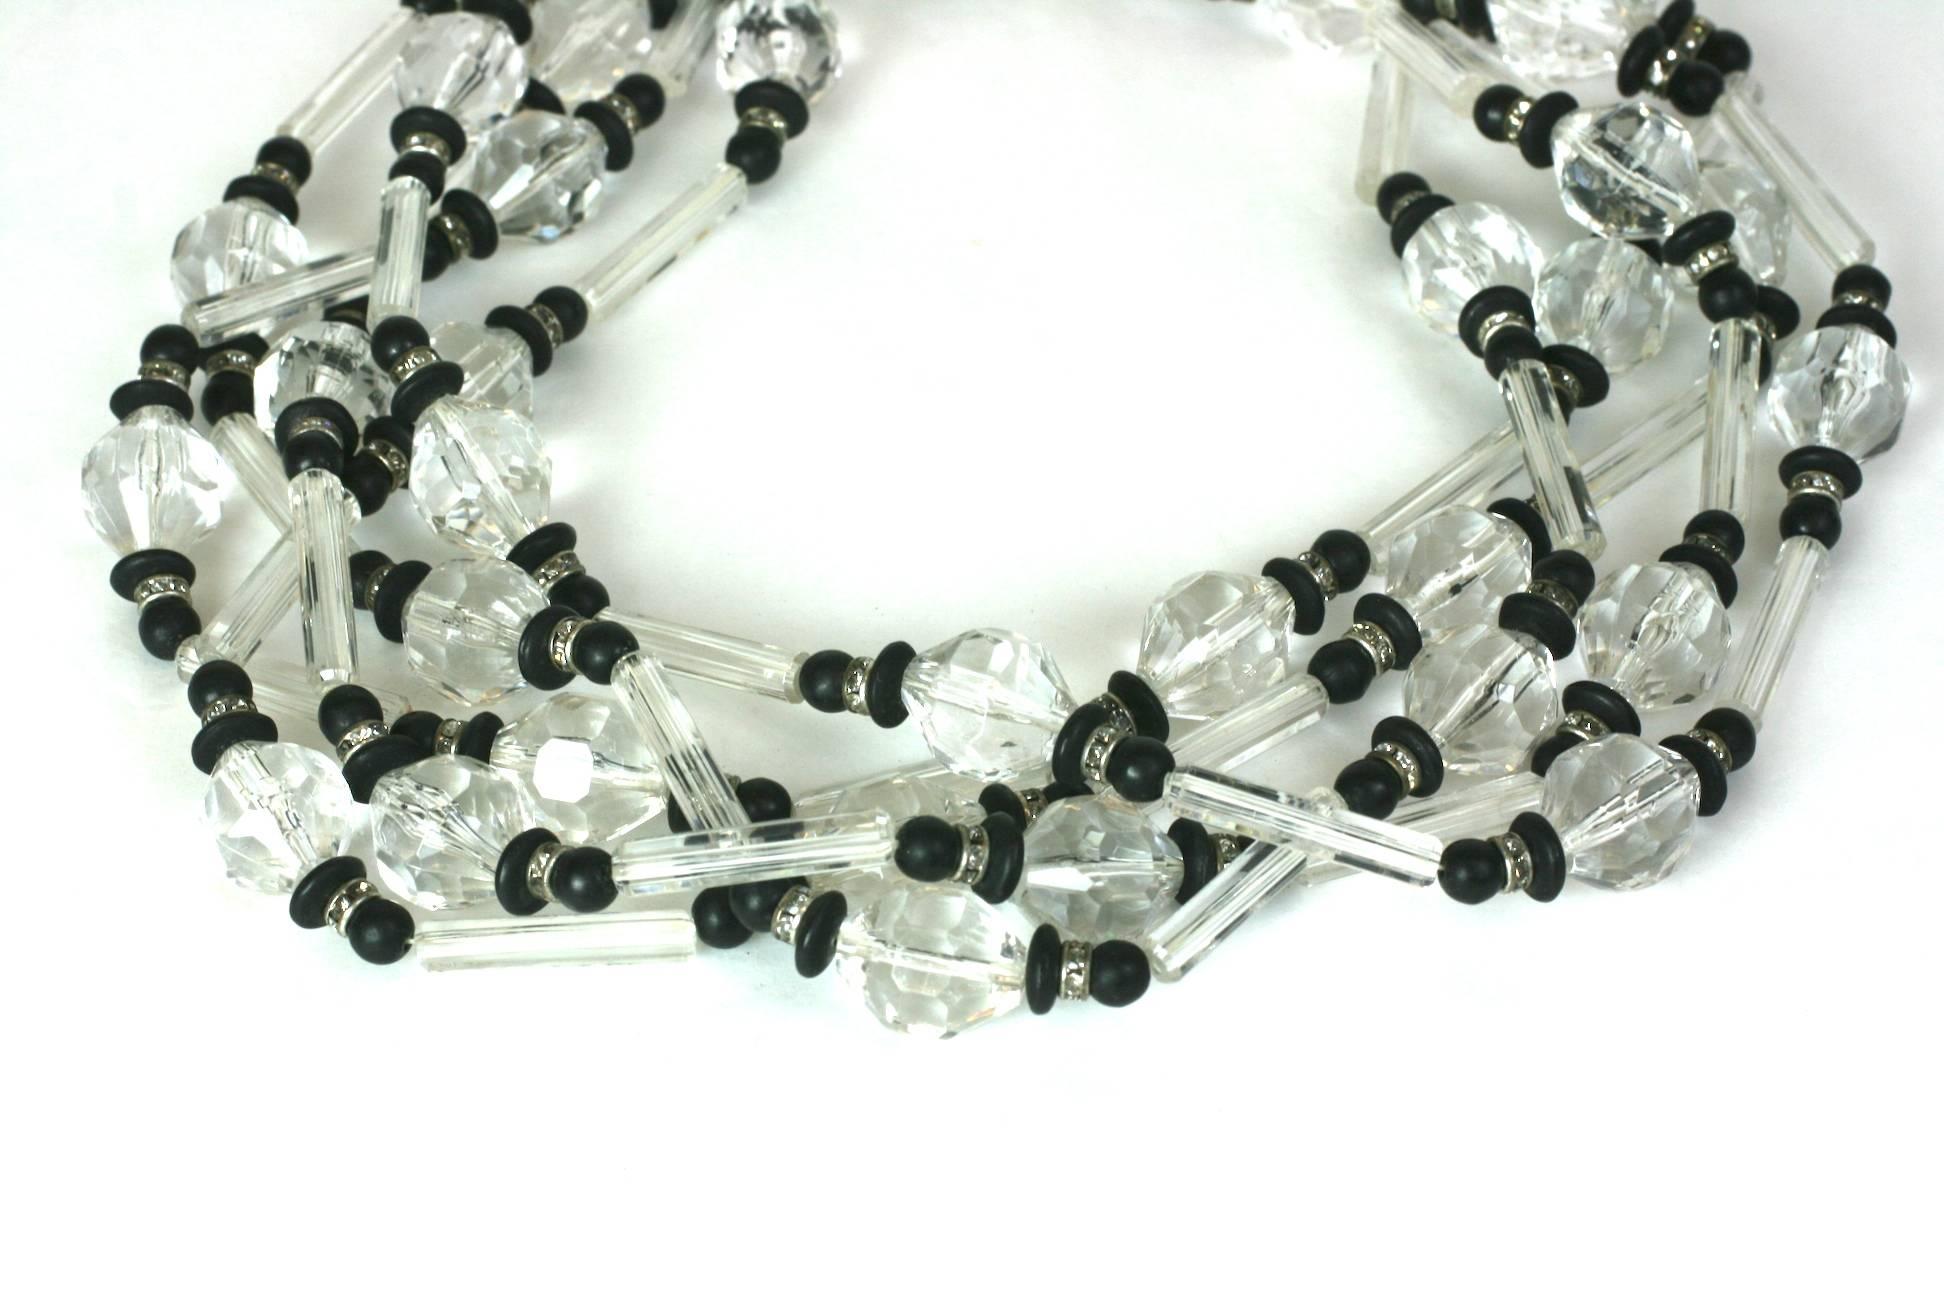 Lucite und Pave Rondel Perlen Halskette aus den 1960er Jahren. Lange, tonnenförmige Lucite-Perlen werden mit schwarzem Lucite und grauen Rondellen in Pflasterkristall gemischt, um eine 